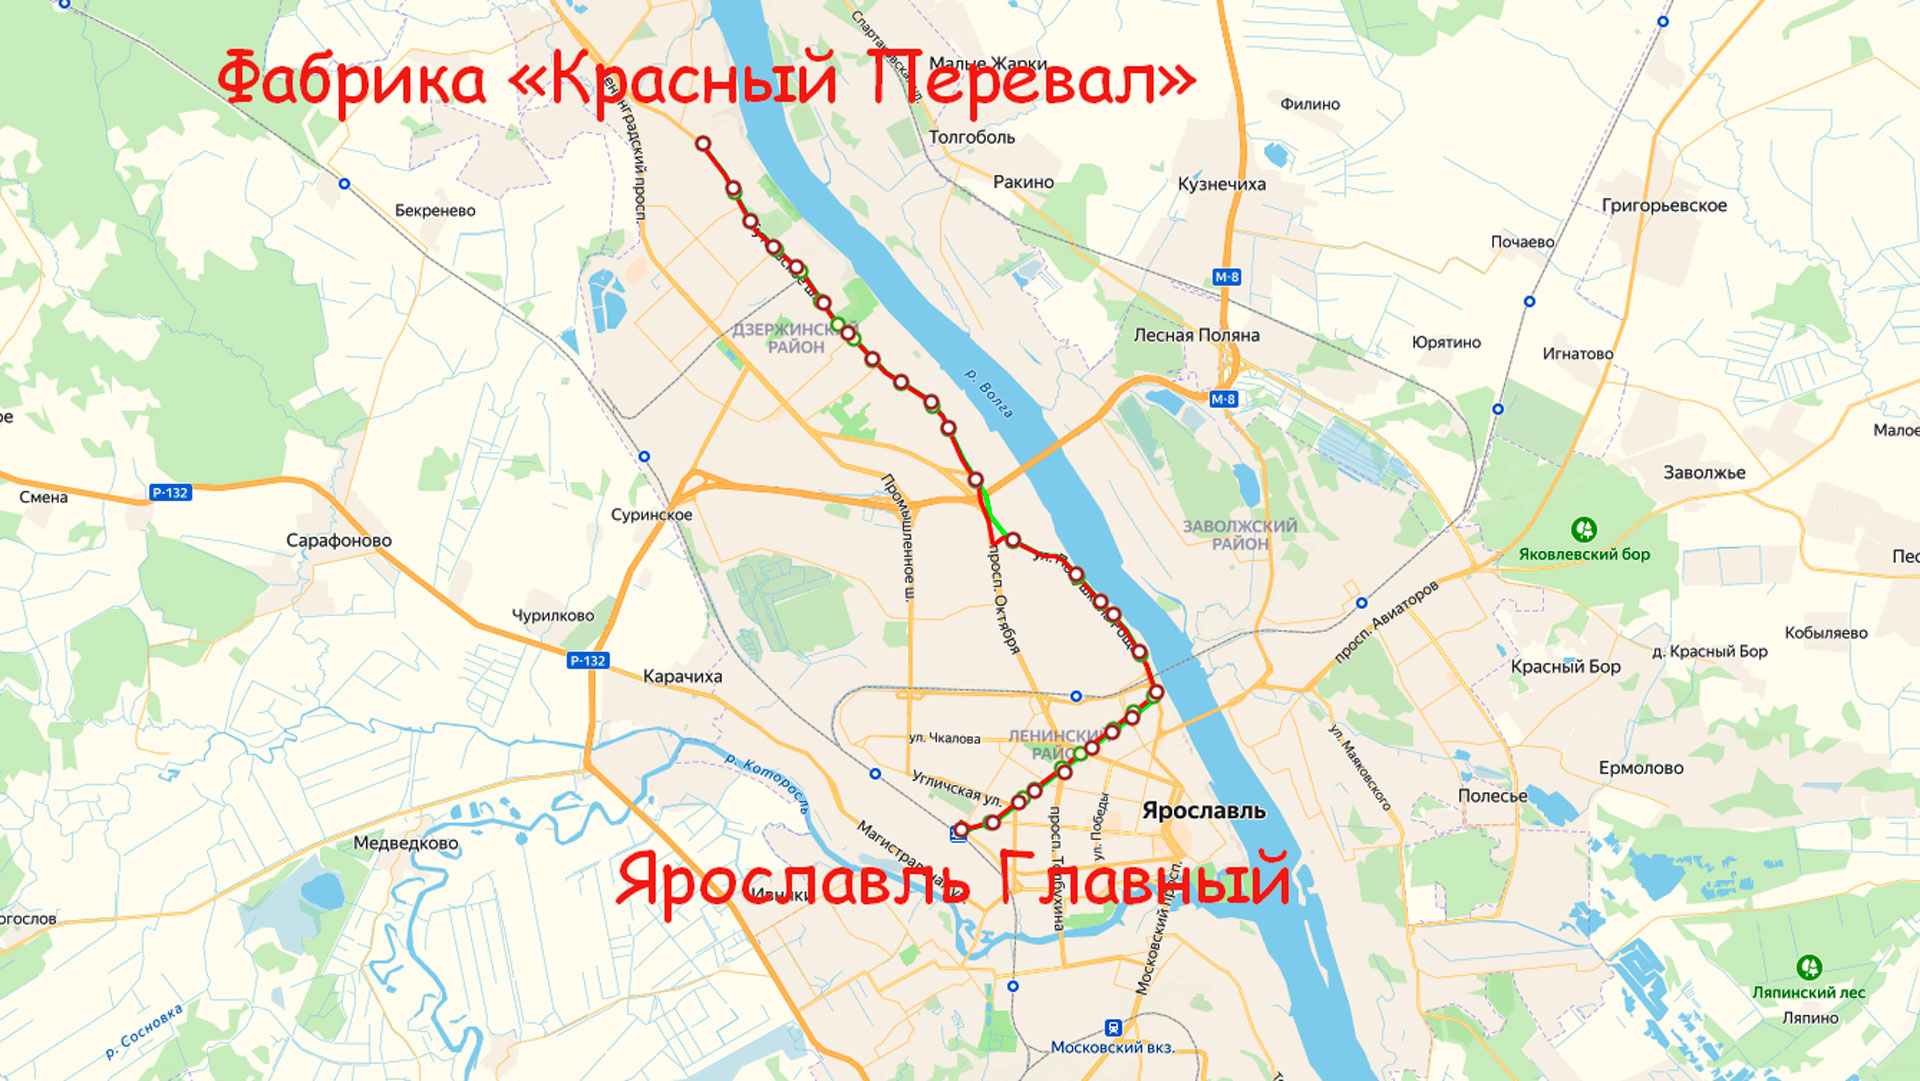 Маршрут троллейбуса 3 в Ярославле на карте.